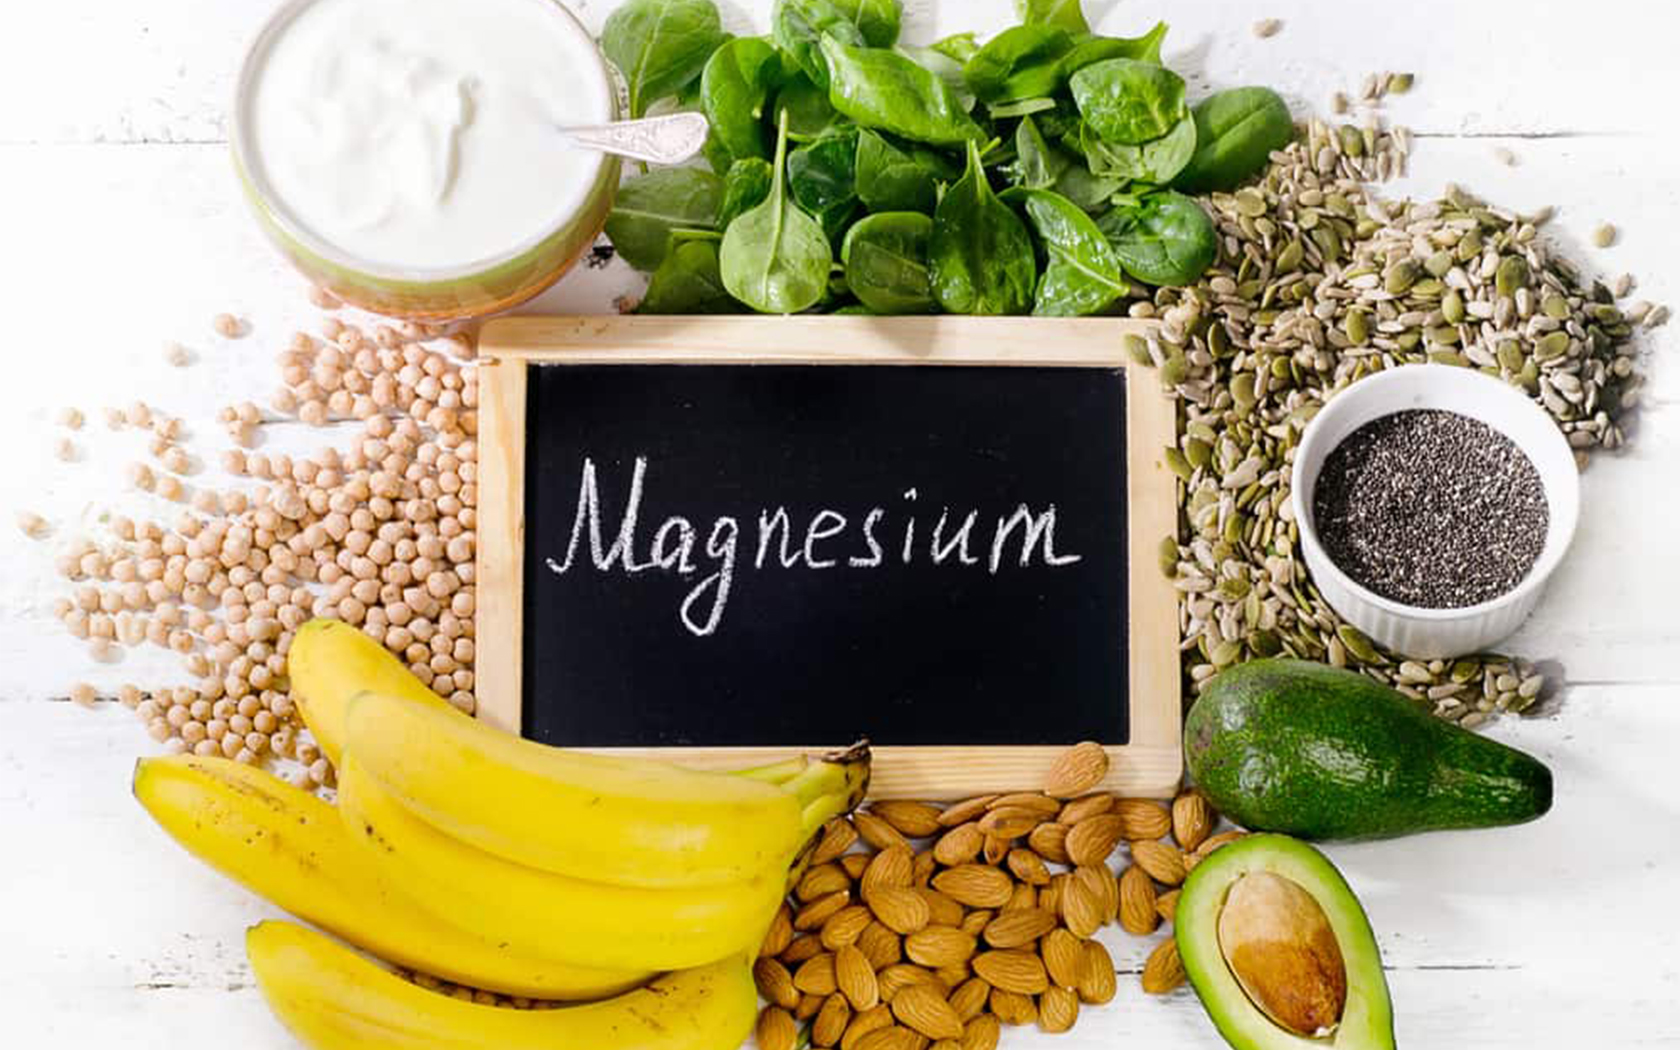 magnezyum magnezyumeksikliği magnezyumformları magnezyumeksikliğinedenleri supplementler kanşekeri diyabet kalphastalıkları tiroid testesteron seratonin sinirsistemi astım immünsistem felç migren metaboliksendrom gebelik eklampsi kabızlık böbrek işitmekaybı travma fibromiyalji osteoprozis alkolizm kemoterapi kanser koah obezite
